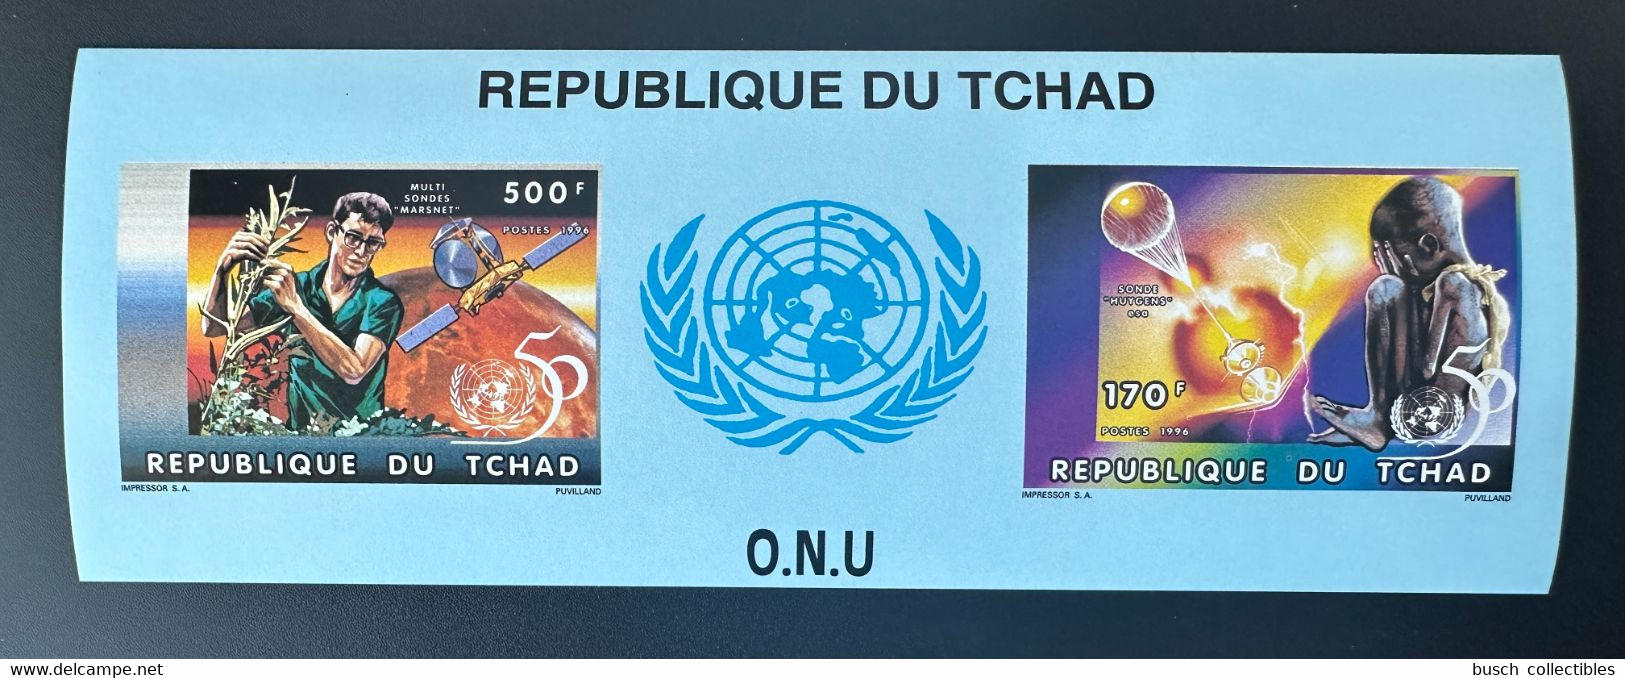 Tchad Chad Tschad 1996 Mi. Bl. 256 B IMPERF ND United Nations Unies Vereinte Nationen UNO ONU UN 50 Ans Years Jahre - VN